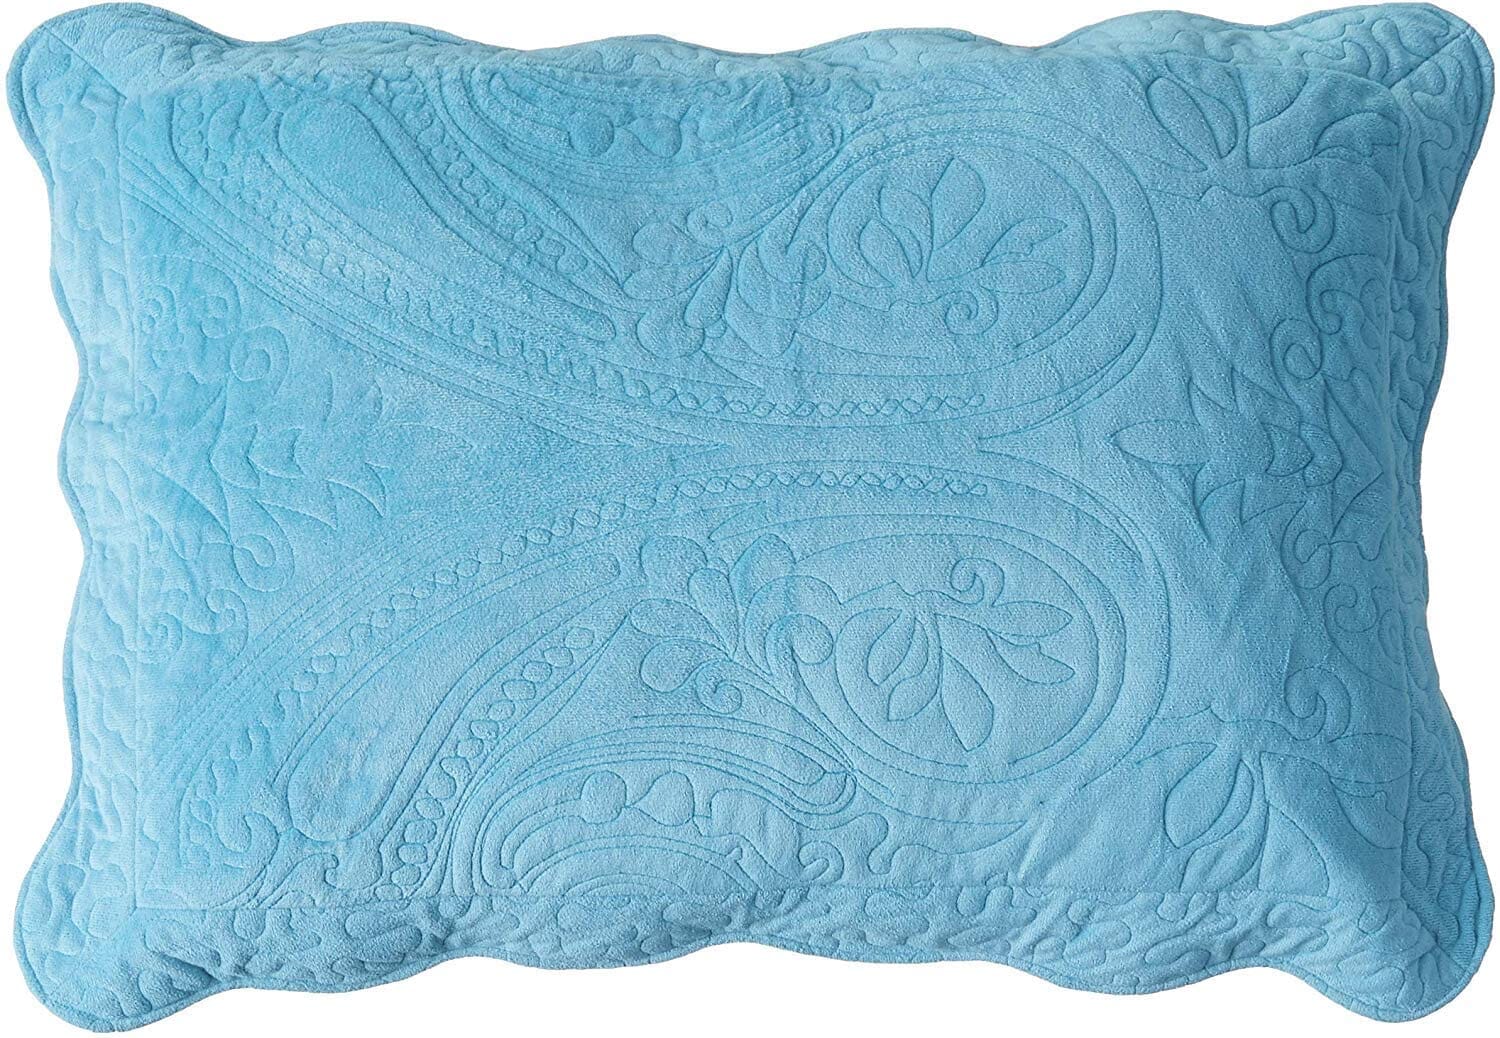 Tache Super Soft Blue Scalloped Magic Carpet Quilted Fleece Bedspread Set (DXJ109042-2) - Tache Home Fashion